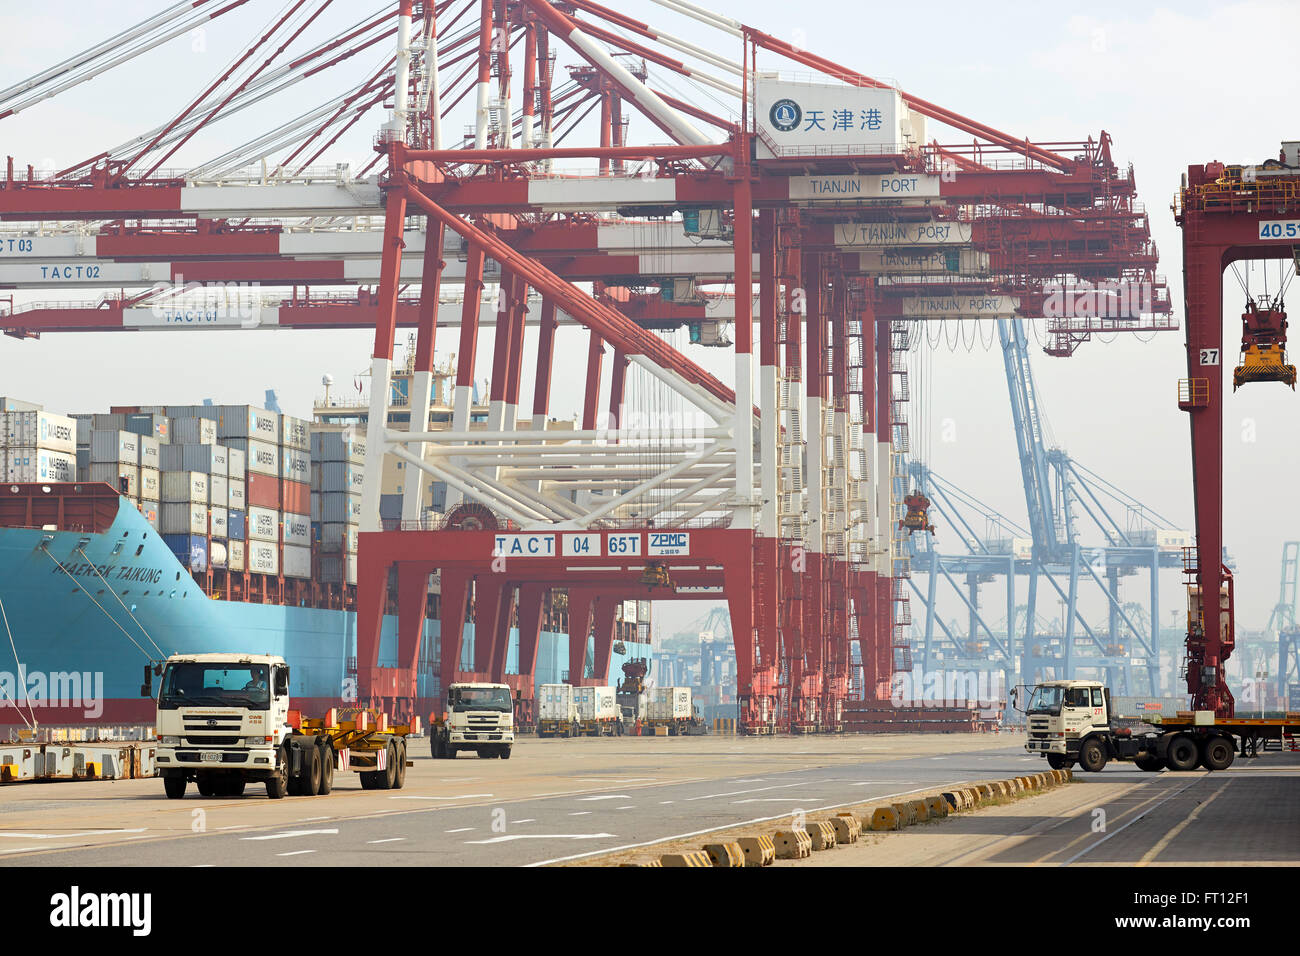 Containerschiff im Hafen, Hafen von Tianjin, Tianjin, China Stockfoto